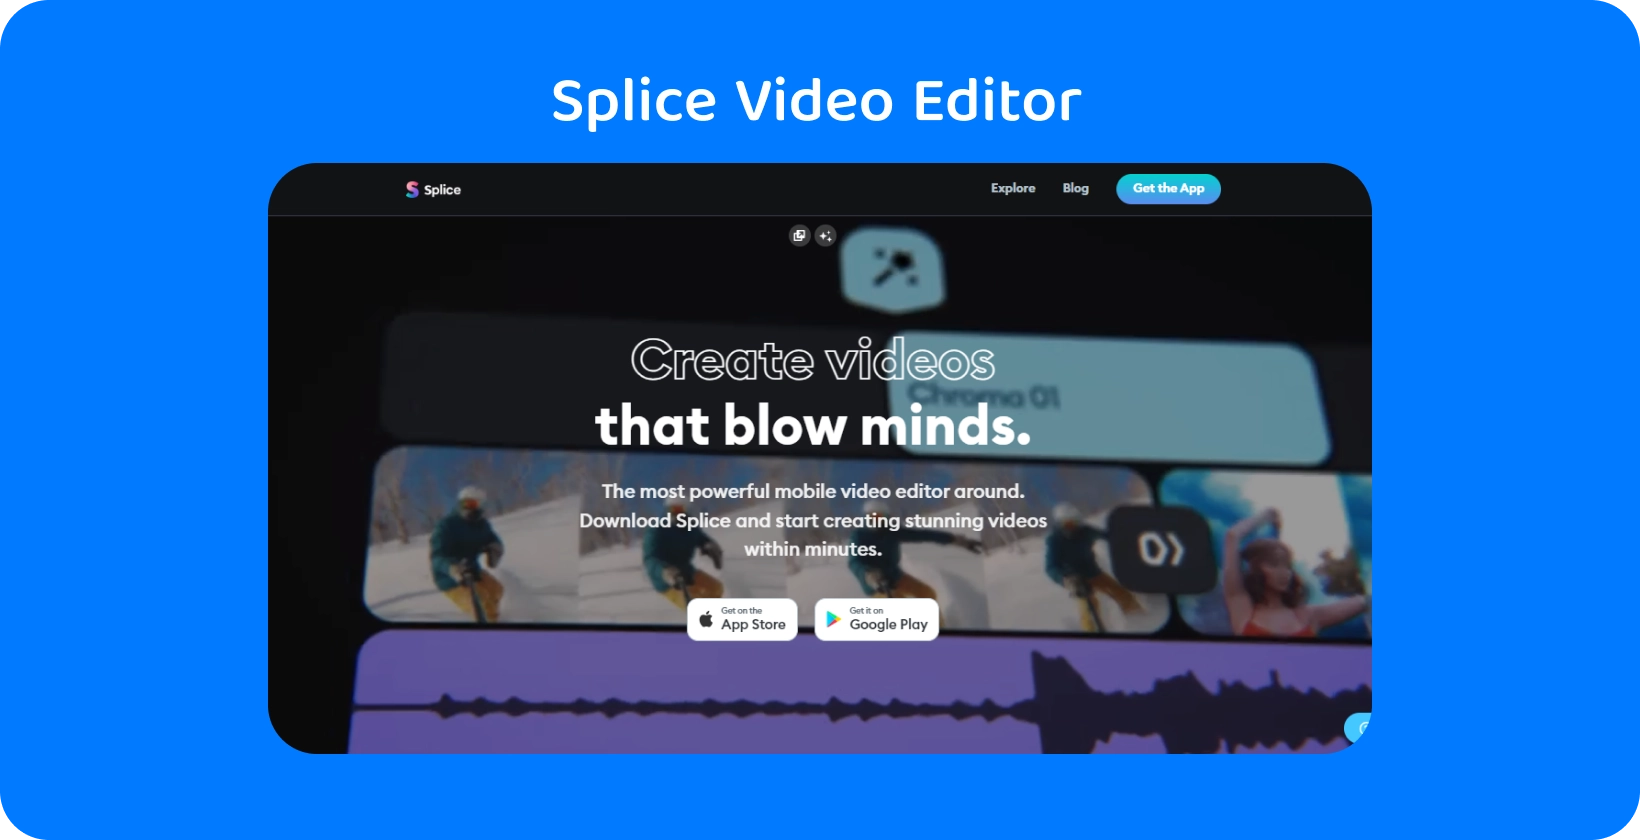 Splice קידום אפליקציות בסמארטפון, ומציג אותו כעורך הווידאו הנייד החזק ביותר ליצירת סרטונים מדהימים.